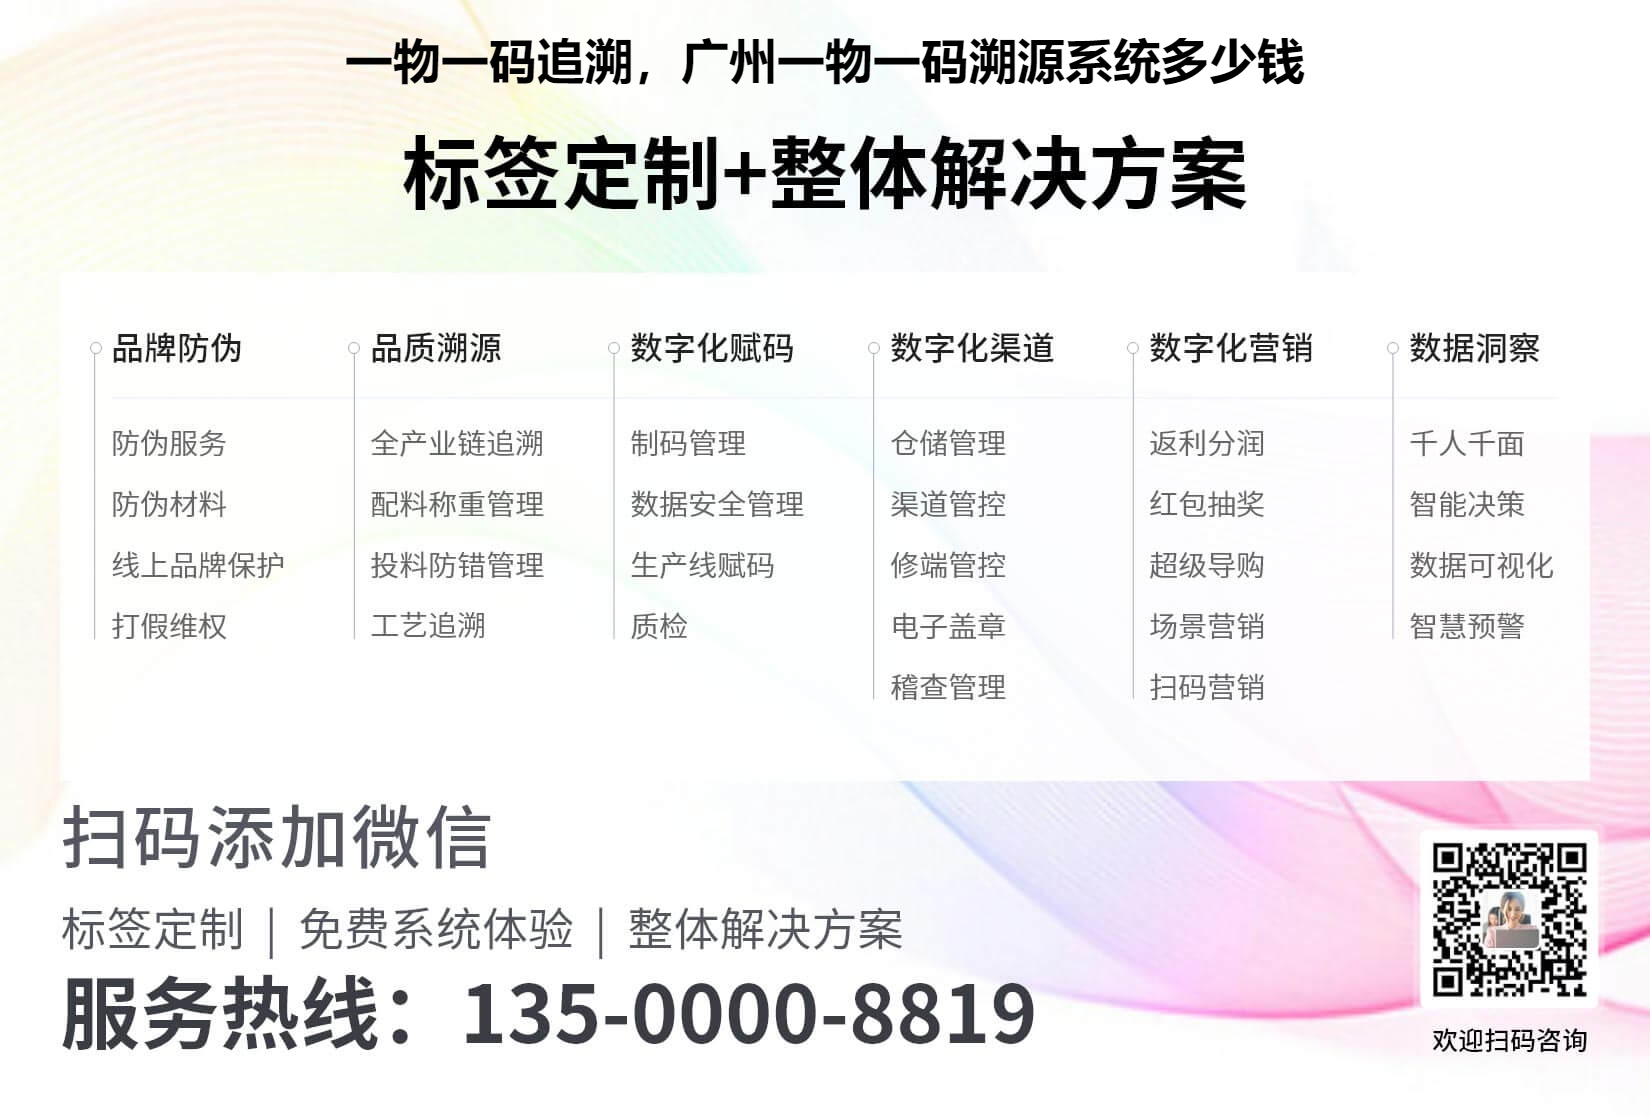 一物一码追溯，广州一物一码溯源系统多少钱